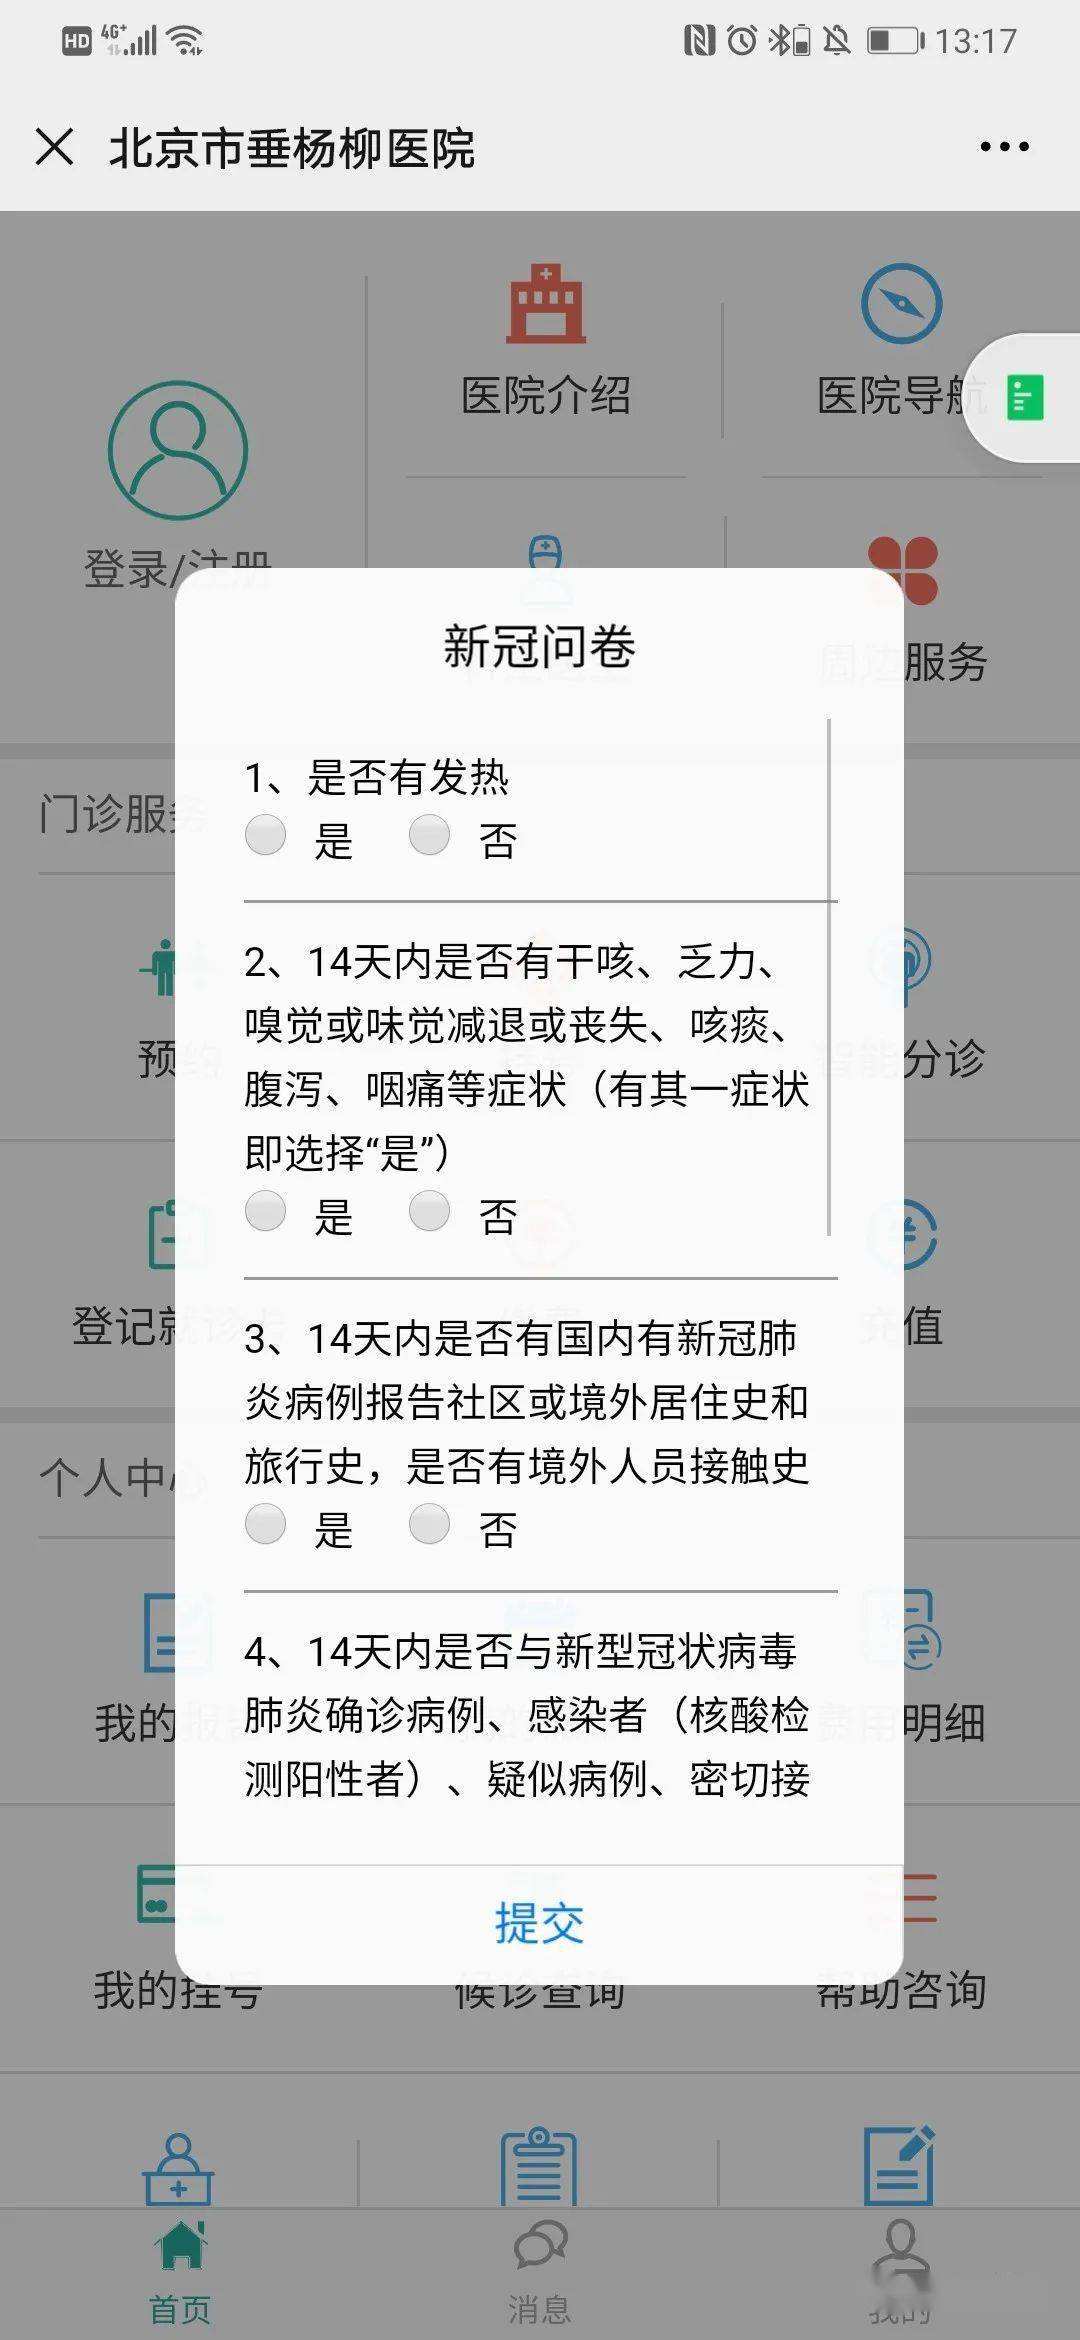 包含北京市垂杨柳医院号贩子联系方式_诚信第一,服务至上!的词条